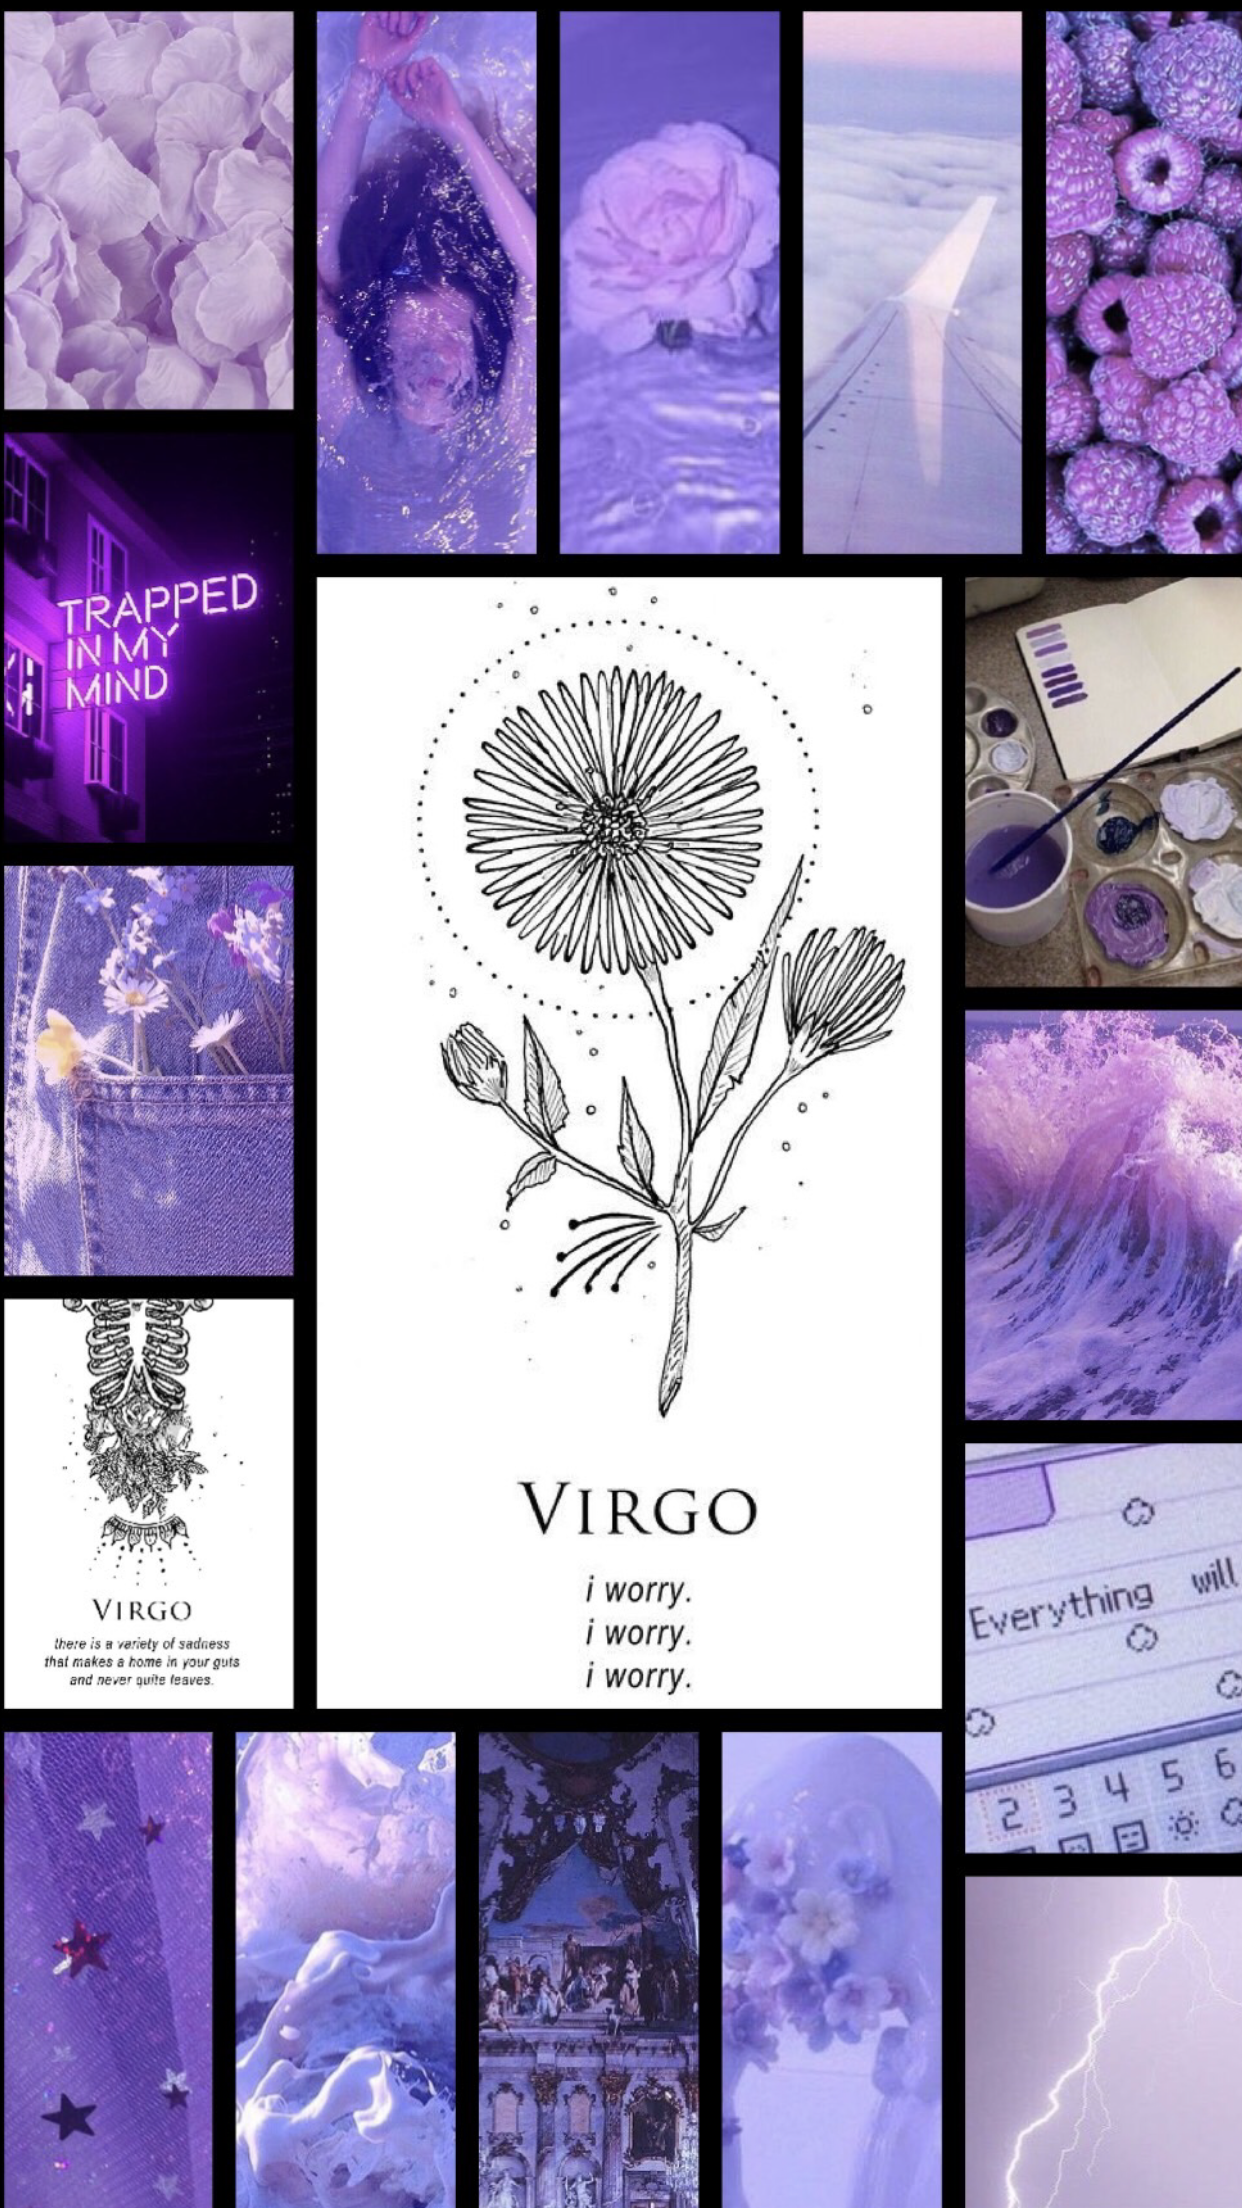 Virgo Wallpapers chứa đựng những hình ảnh độc đáo và tinh tế nhất để bạn có thể tùy chỉnh màn hình của mình. Tận hưởng sự thanh lịch và phong cách của Virgo thông qua những hình ảnh đẹp mắt này.